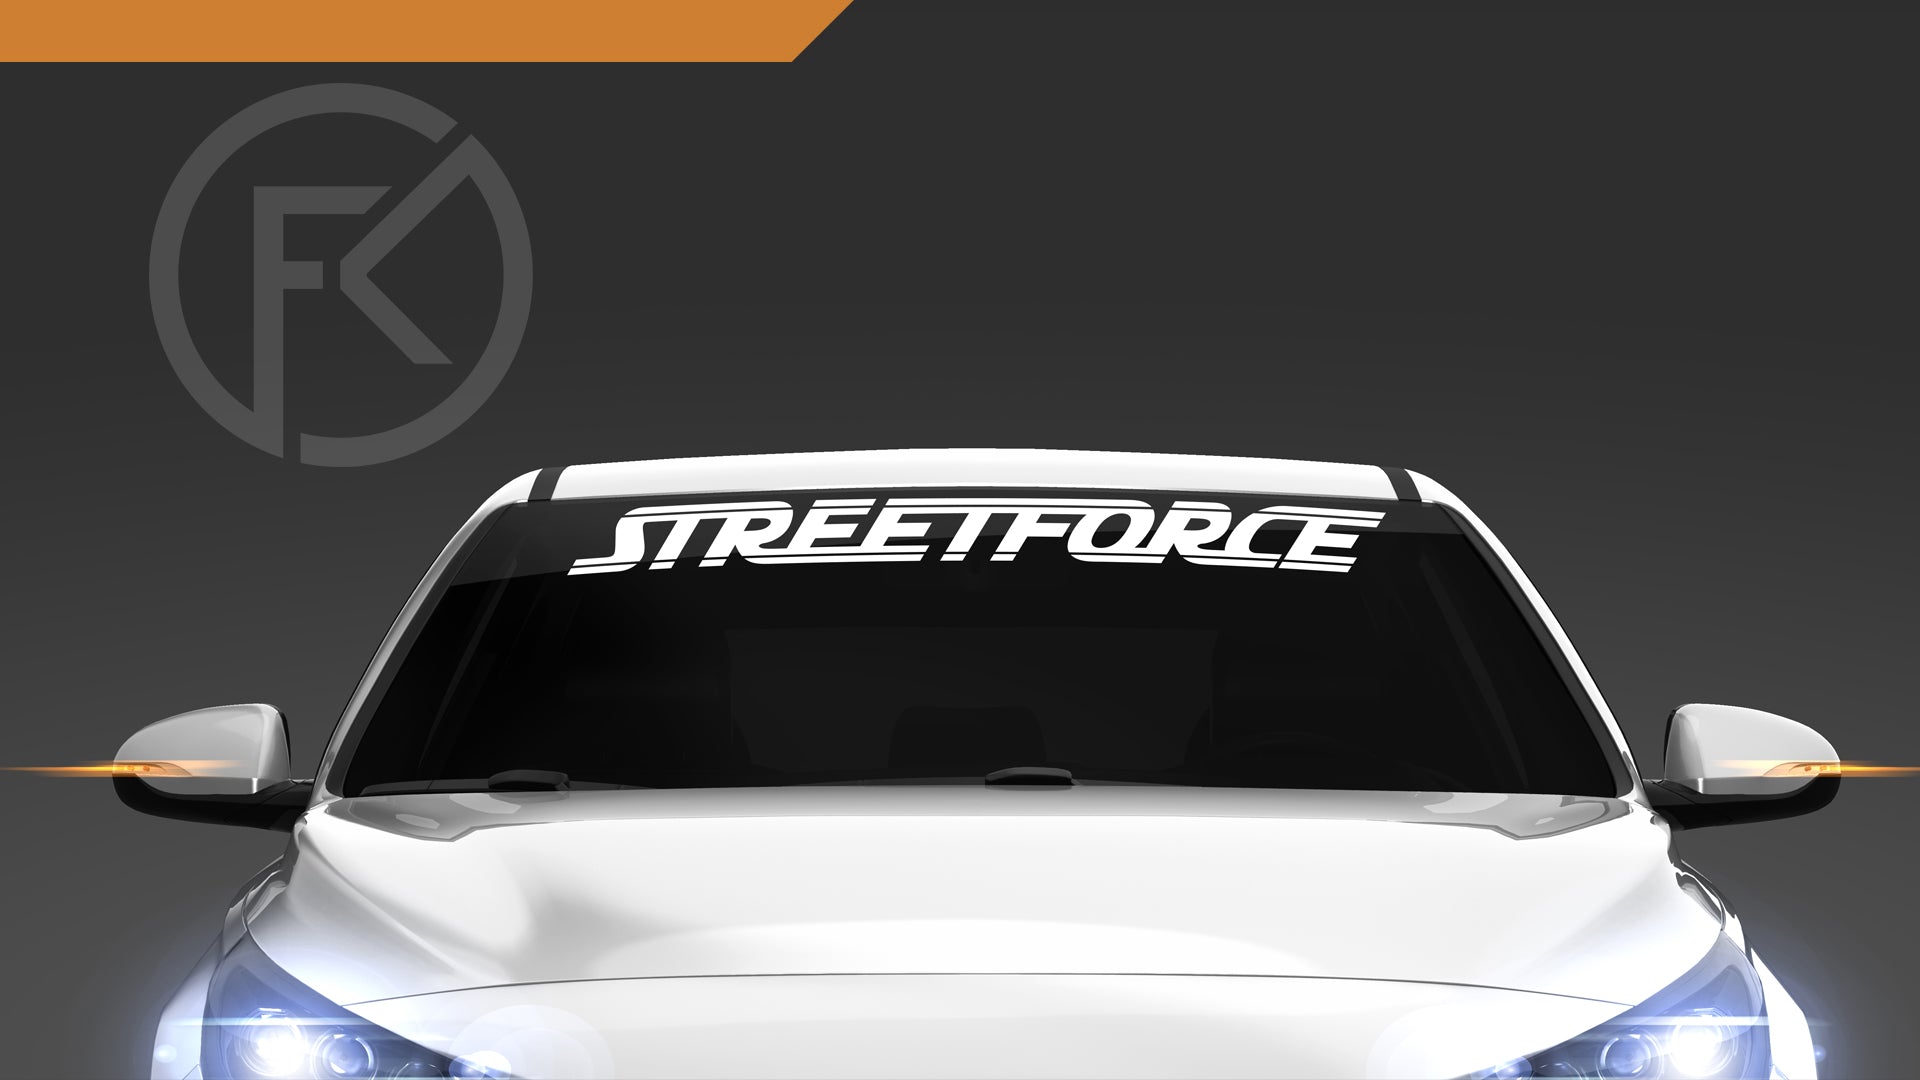 Streetforce Scheibenkeil Schriftzug Aufkleber Sticker Tuning JDM